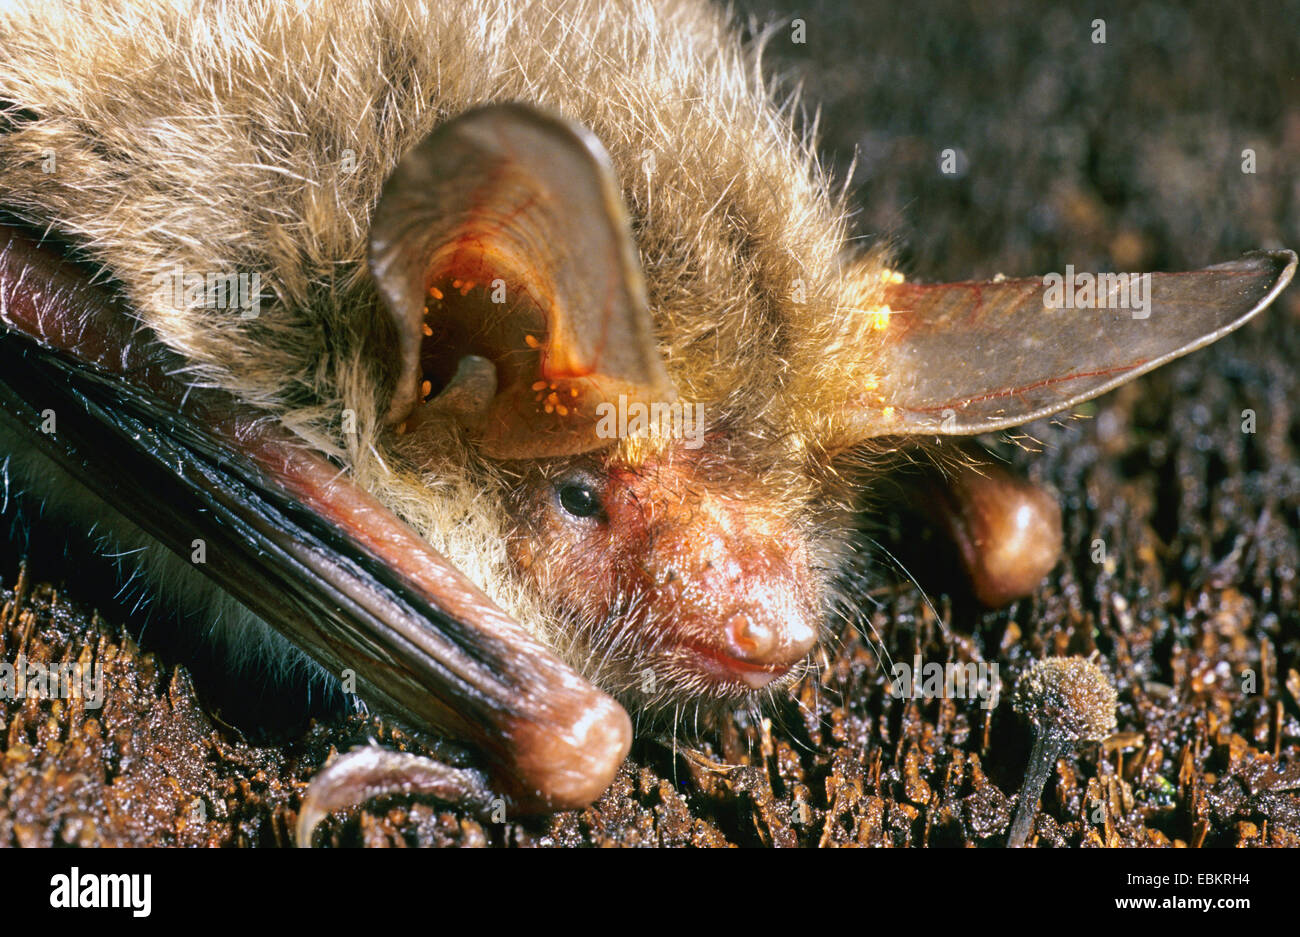 Bechstein's bat (Myotis bechsteini), portrait Stock Photo